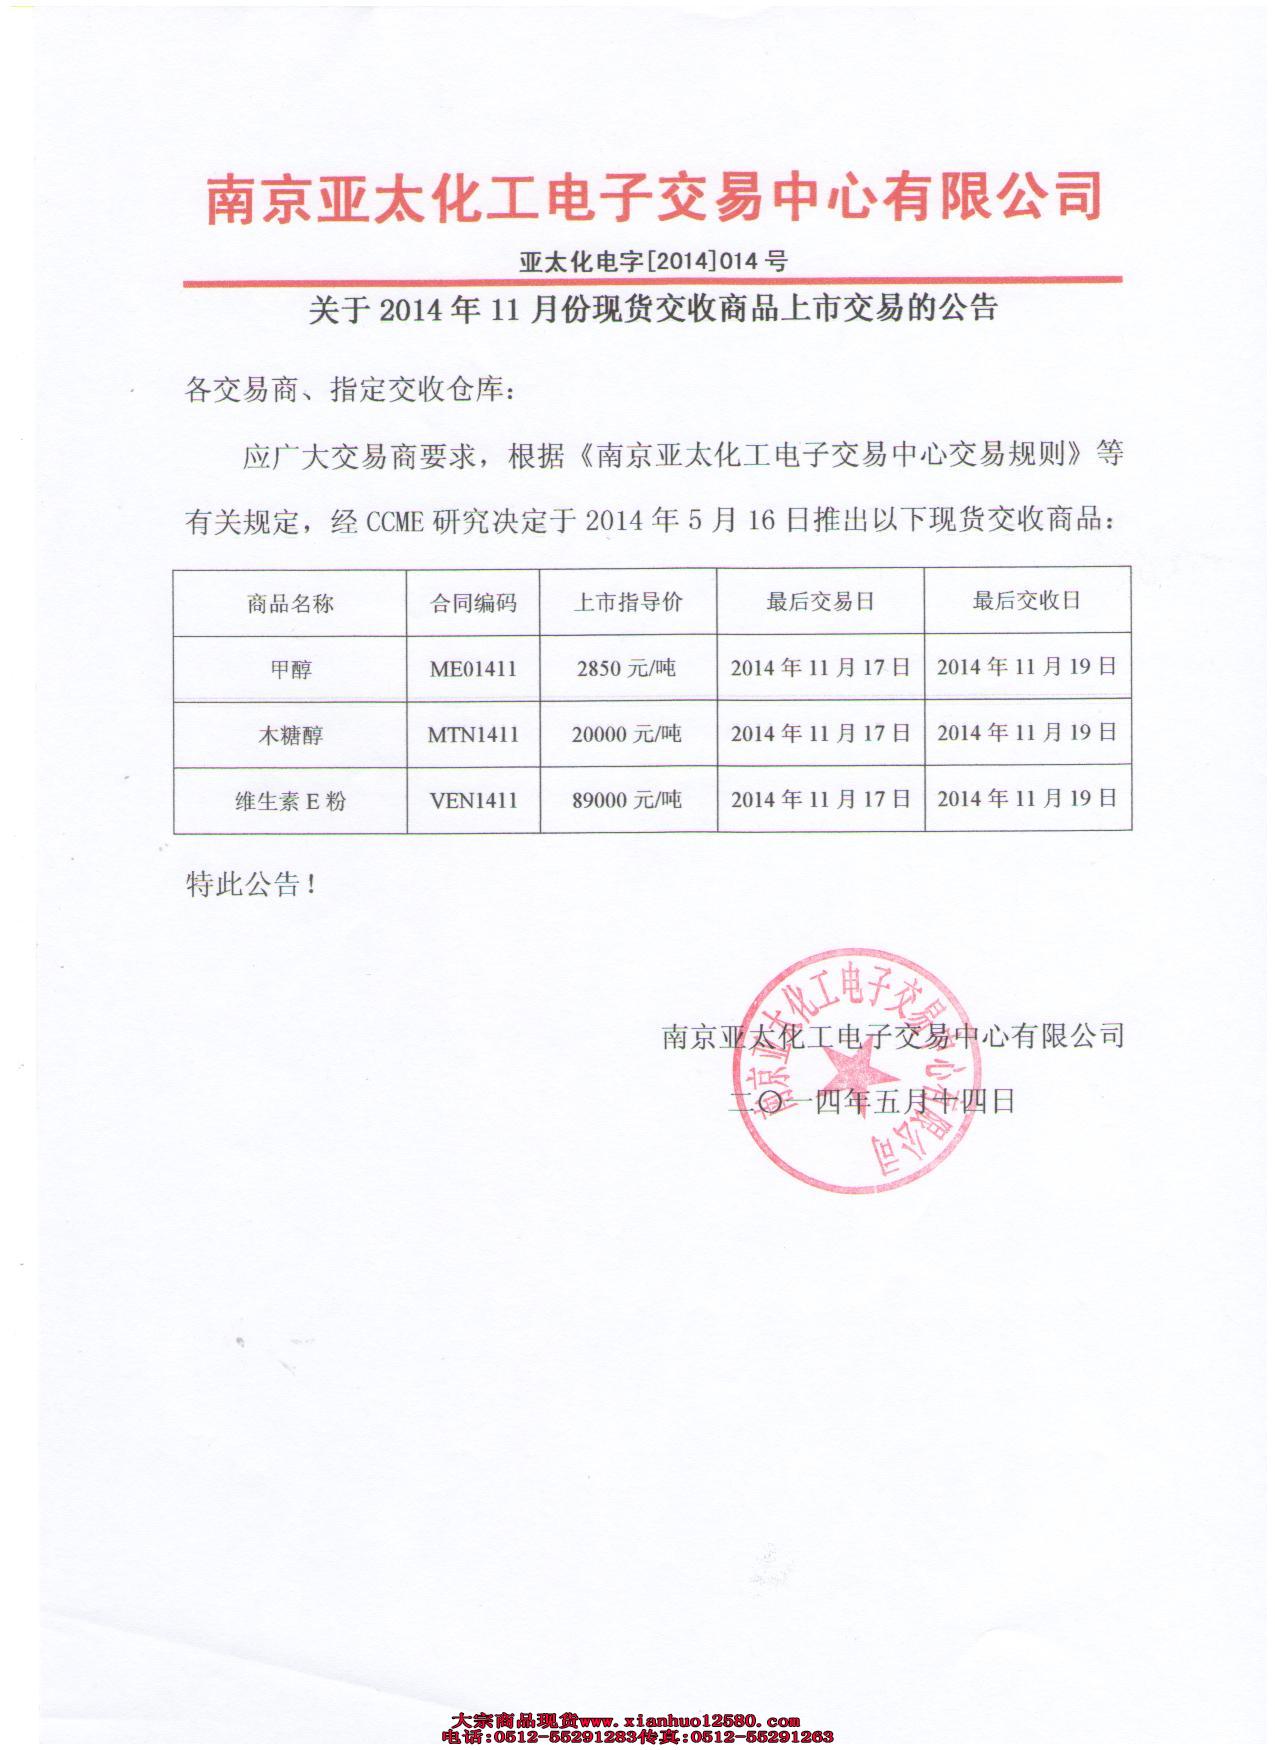 亚太化工关于2014年11月份现货交收商品上市交易的公告